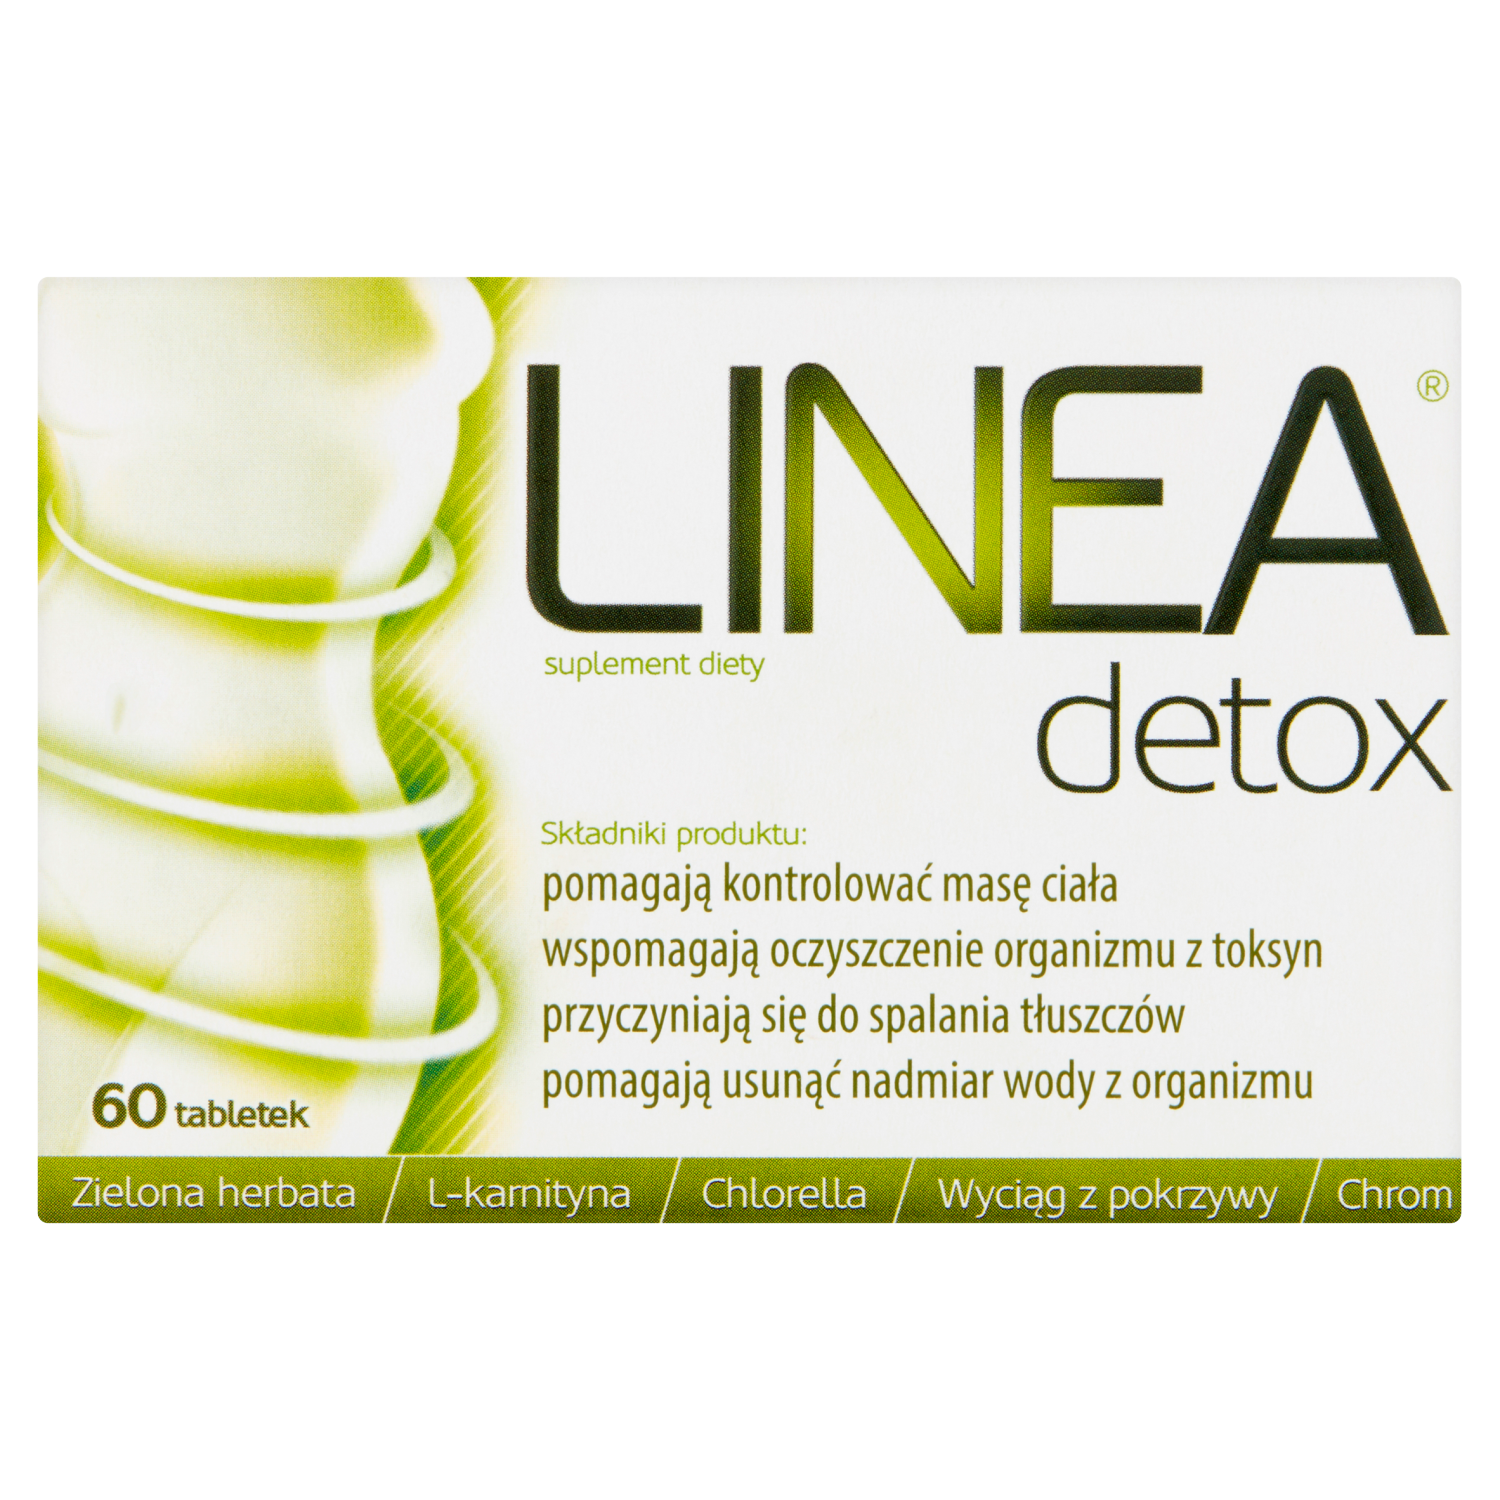 Linea Detox биологически активная добавка, 60 таблеток/1 упаковка linea detox биологически активная добавка 60 таблеток 1 упаковка